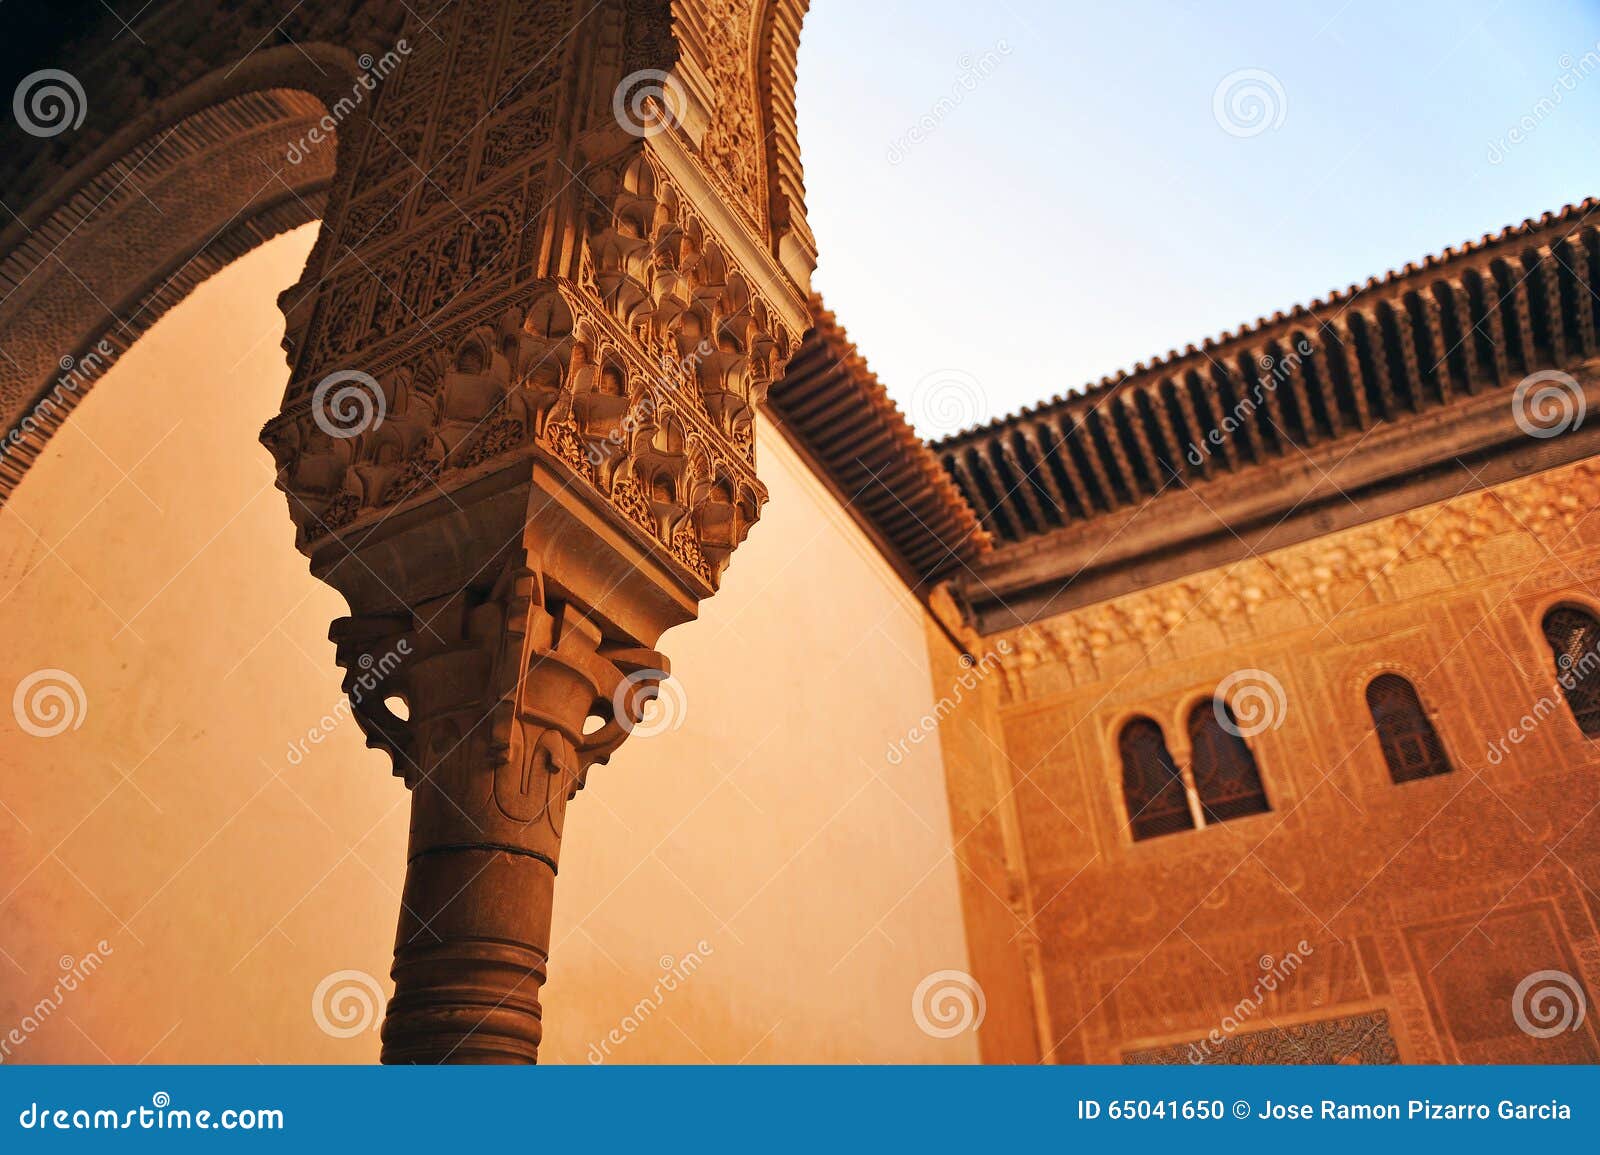 cuarto dorado, alhambra palace in granada, spain